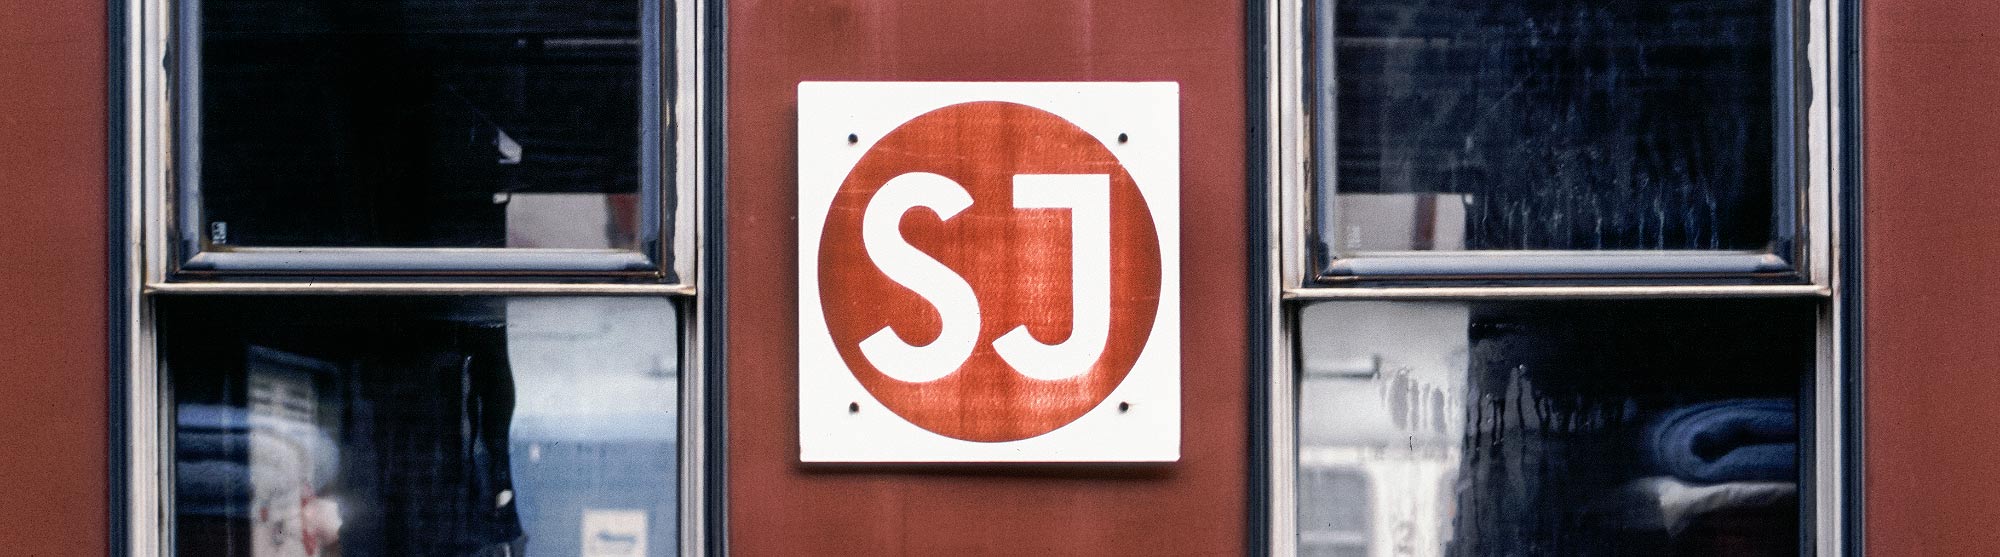 SJ-logo på sovvagn